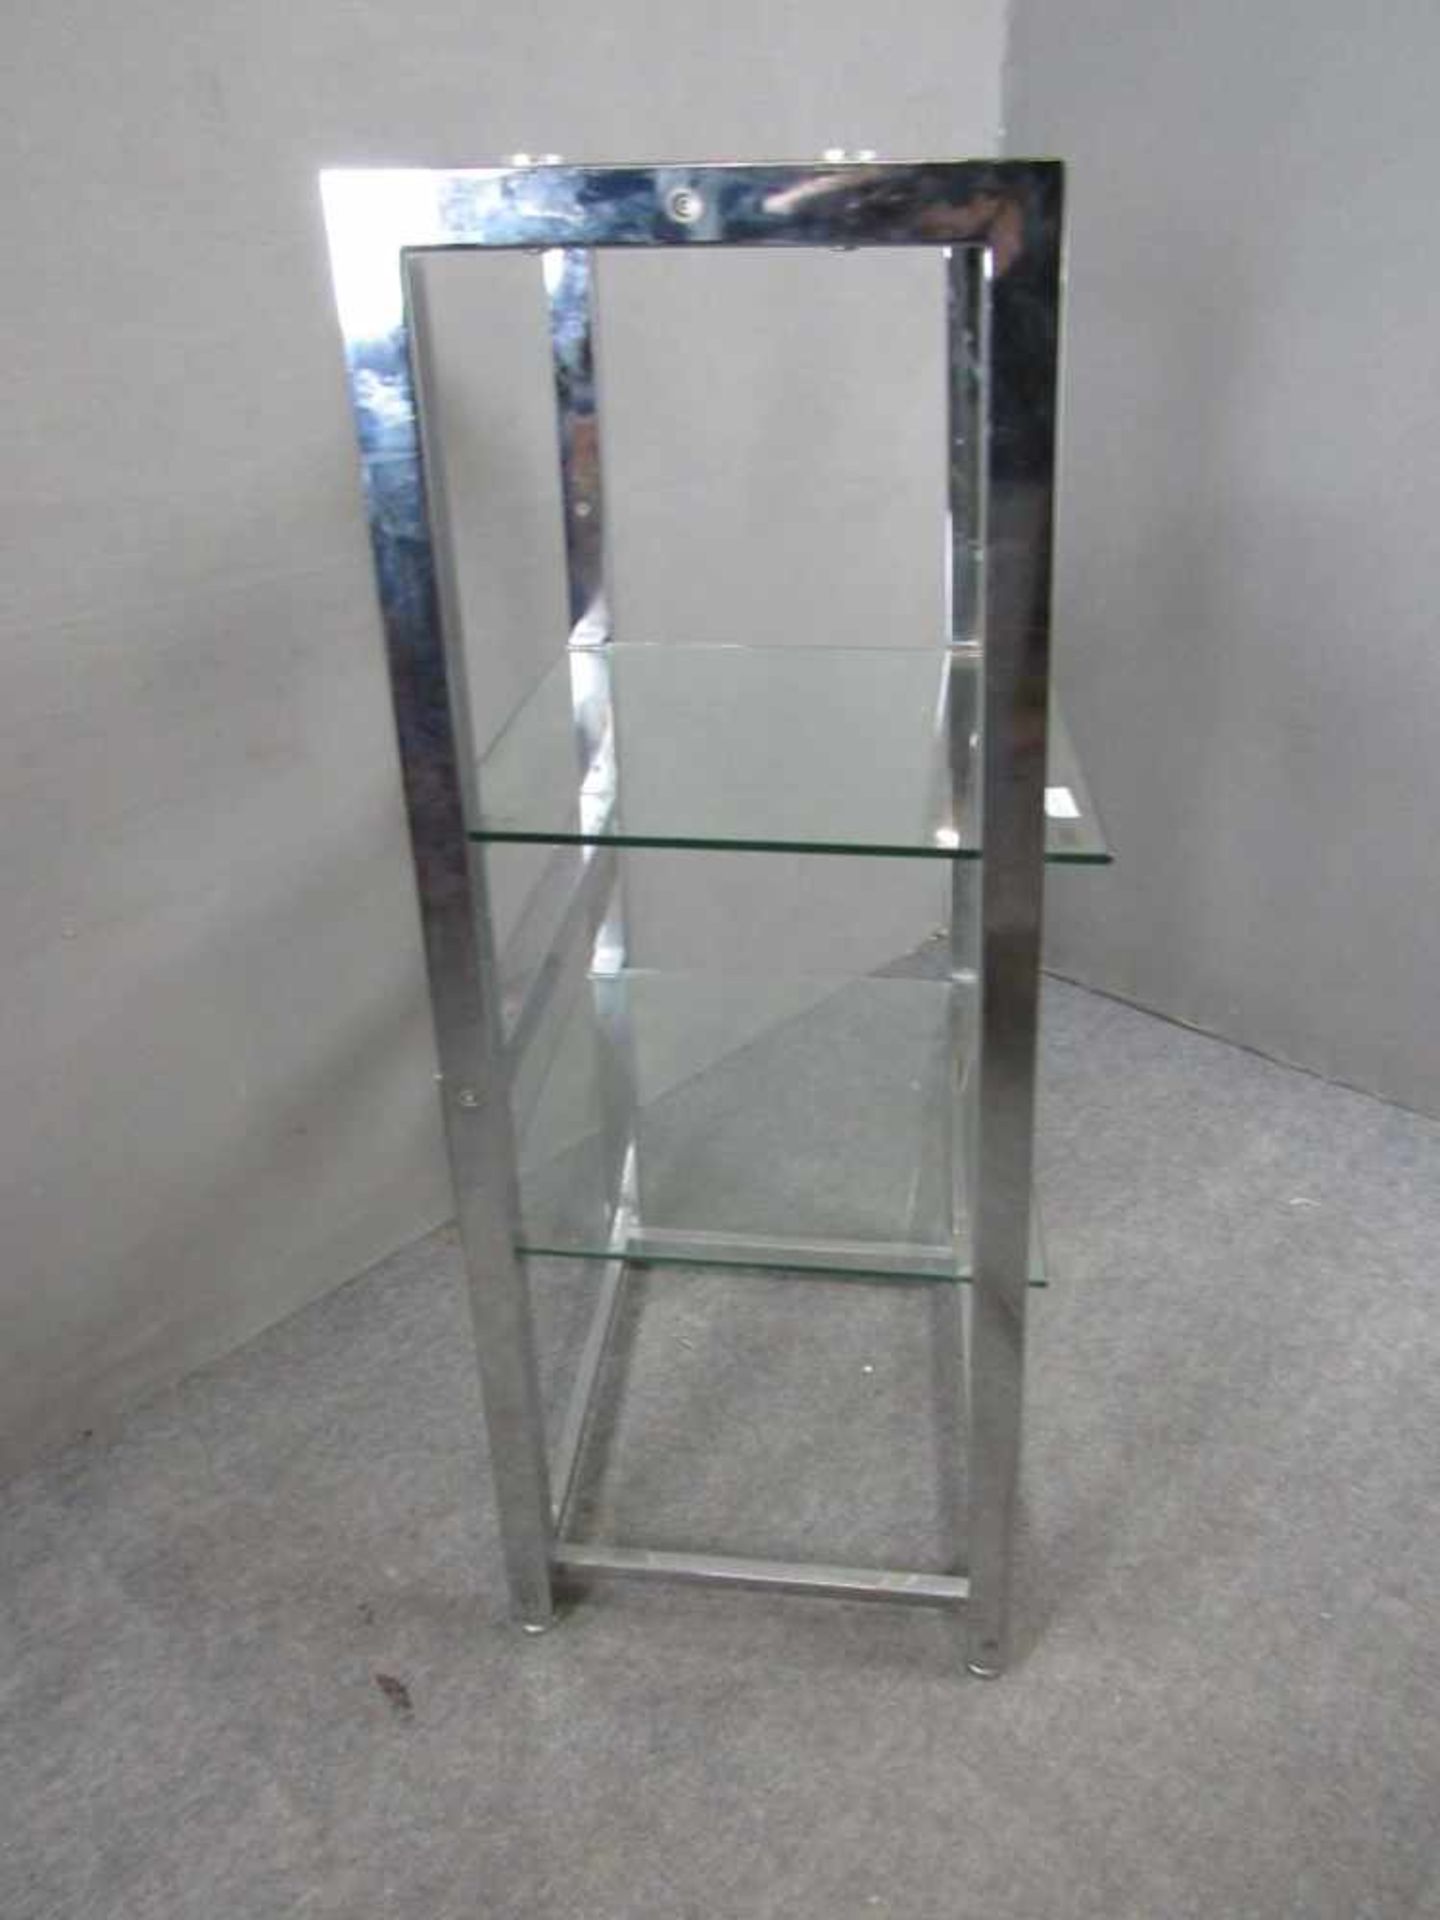 Designerregal verchromtes Metall mit Glasböden ca. 116x54x44cm - Bild 3 aus 3